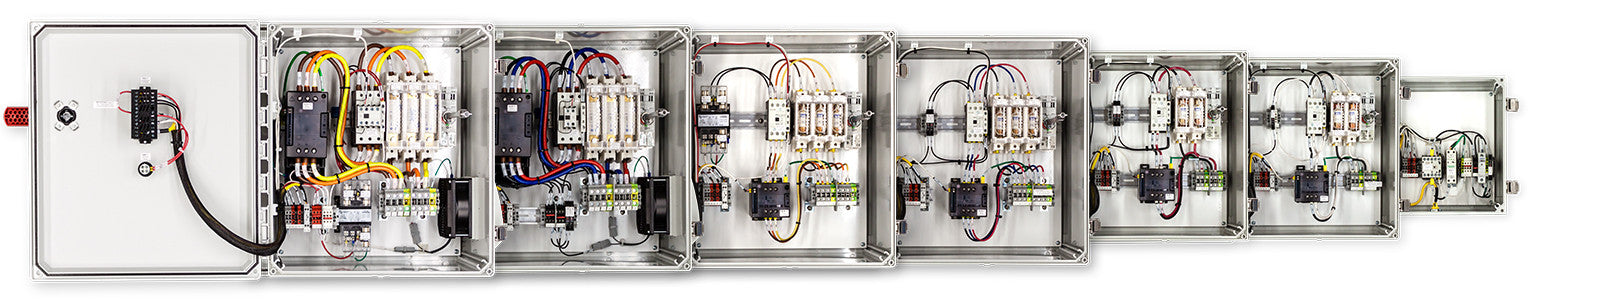 208 VAC Temperature Control Panels